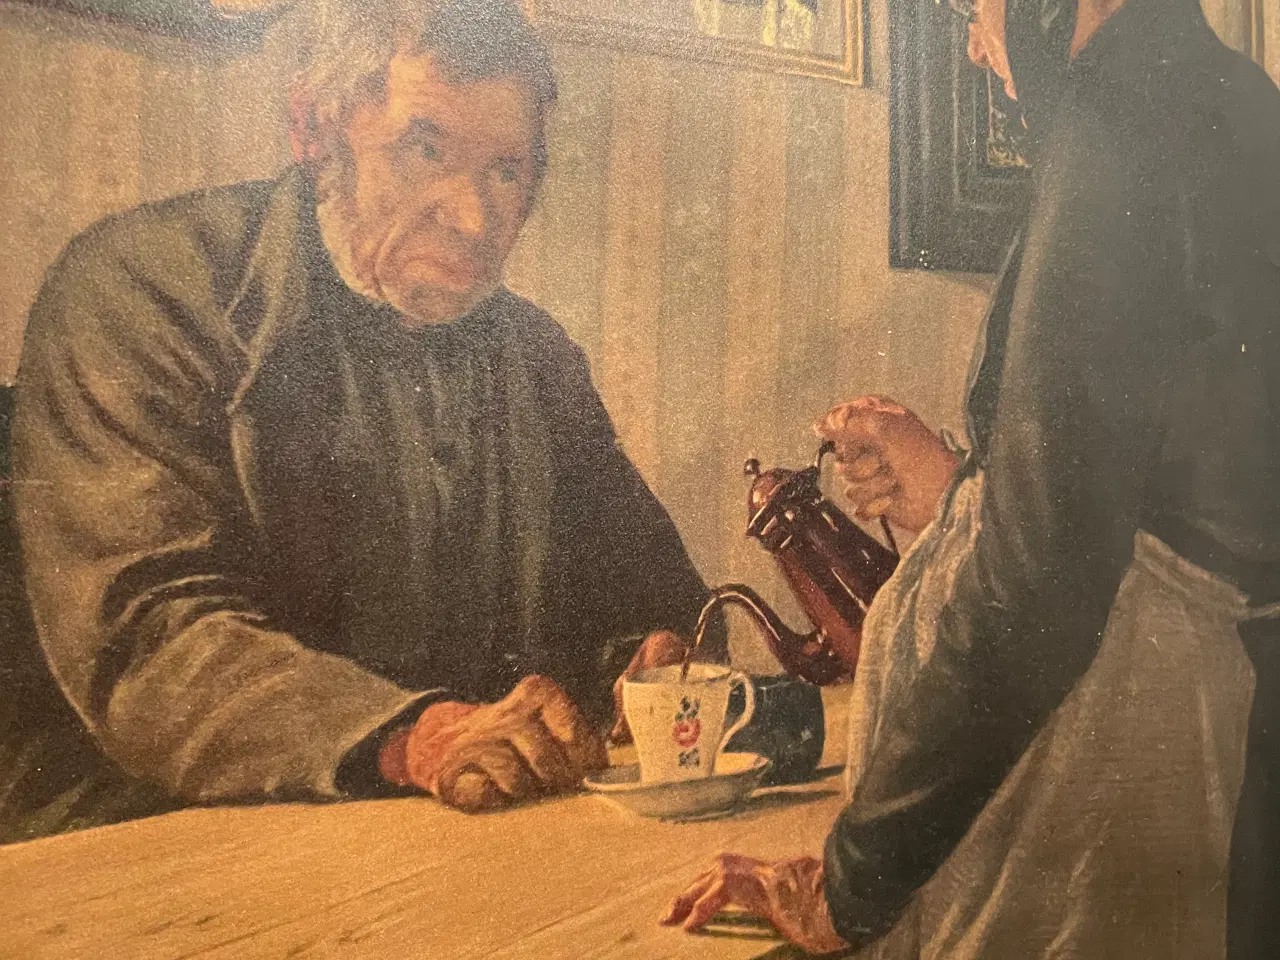 Billede 1 - Billede af mand som får serveret kaffe